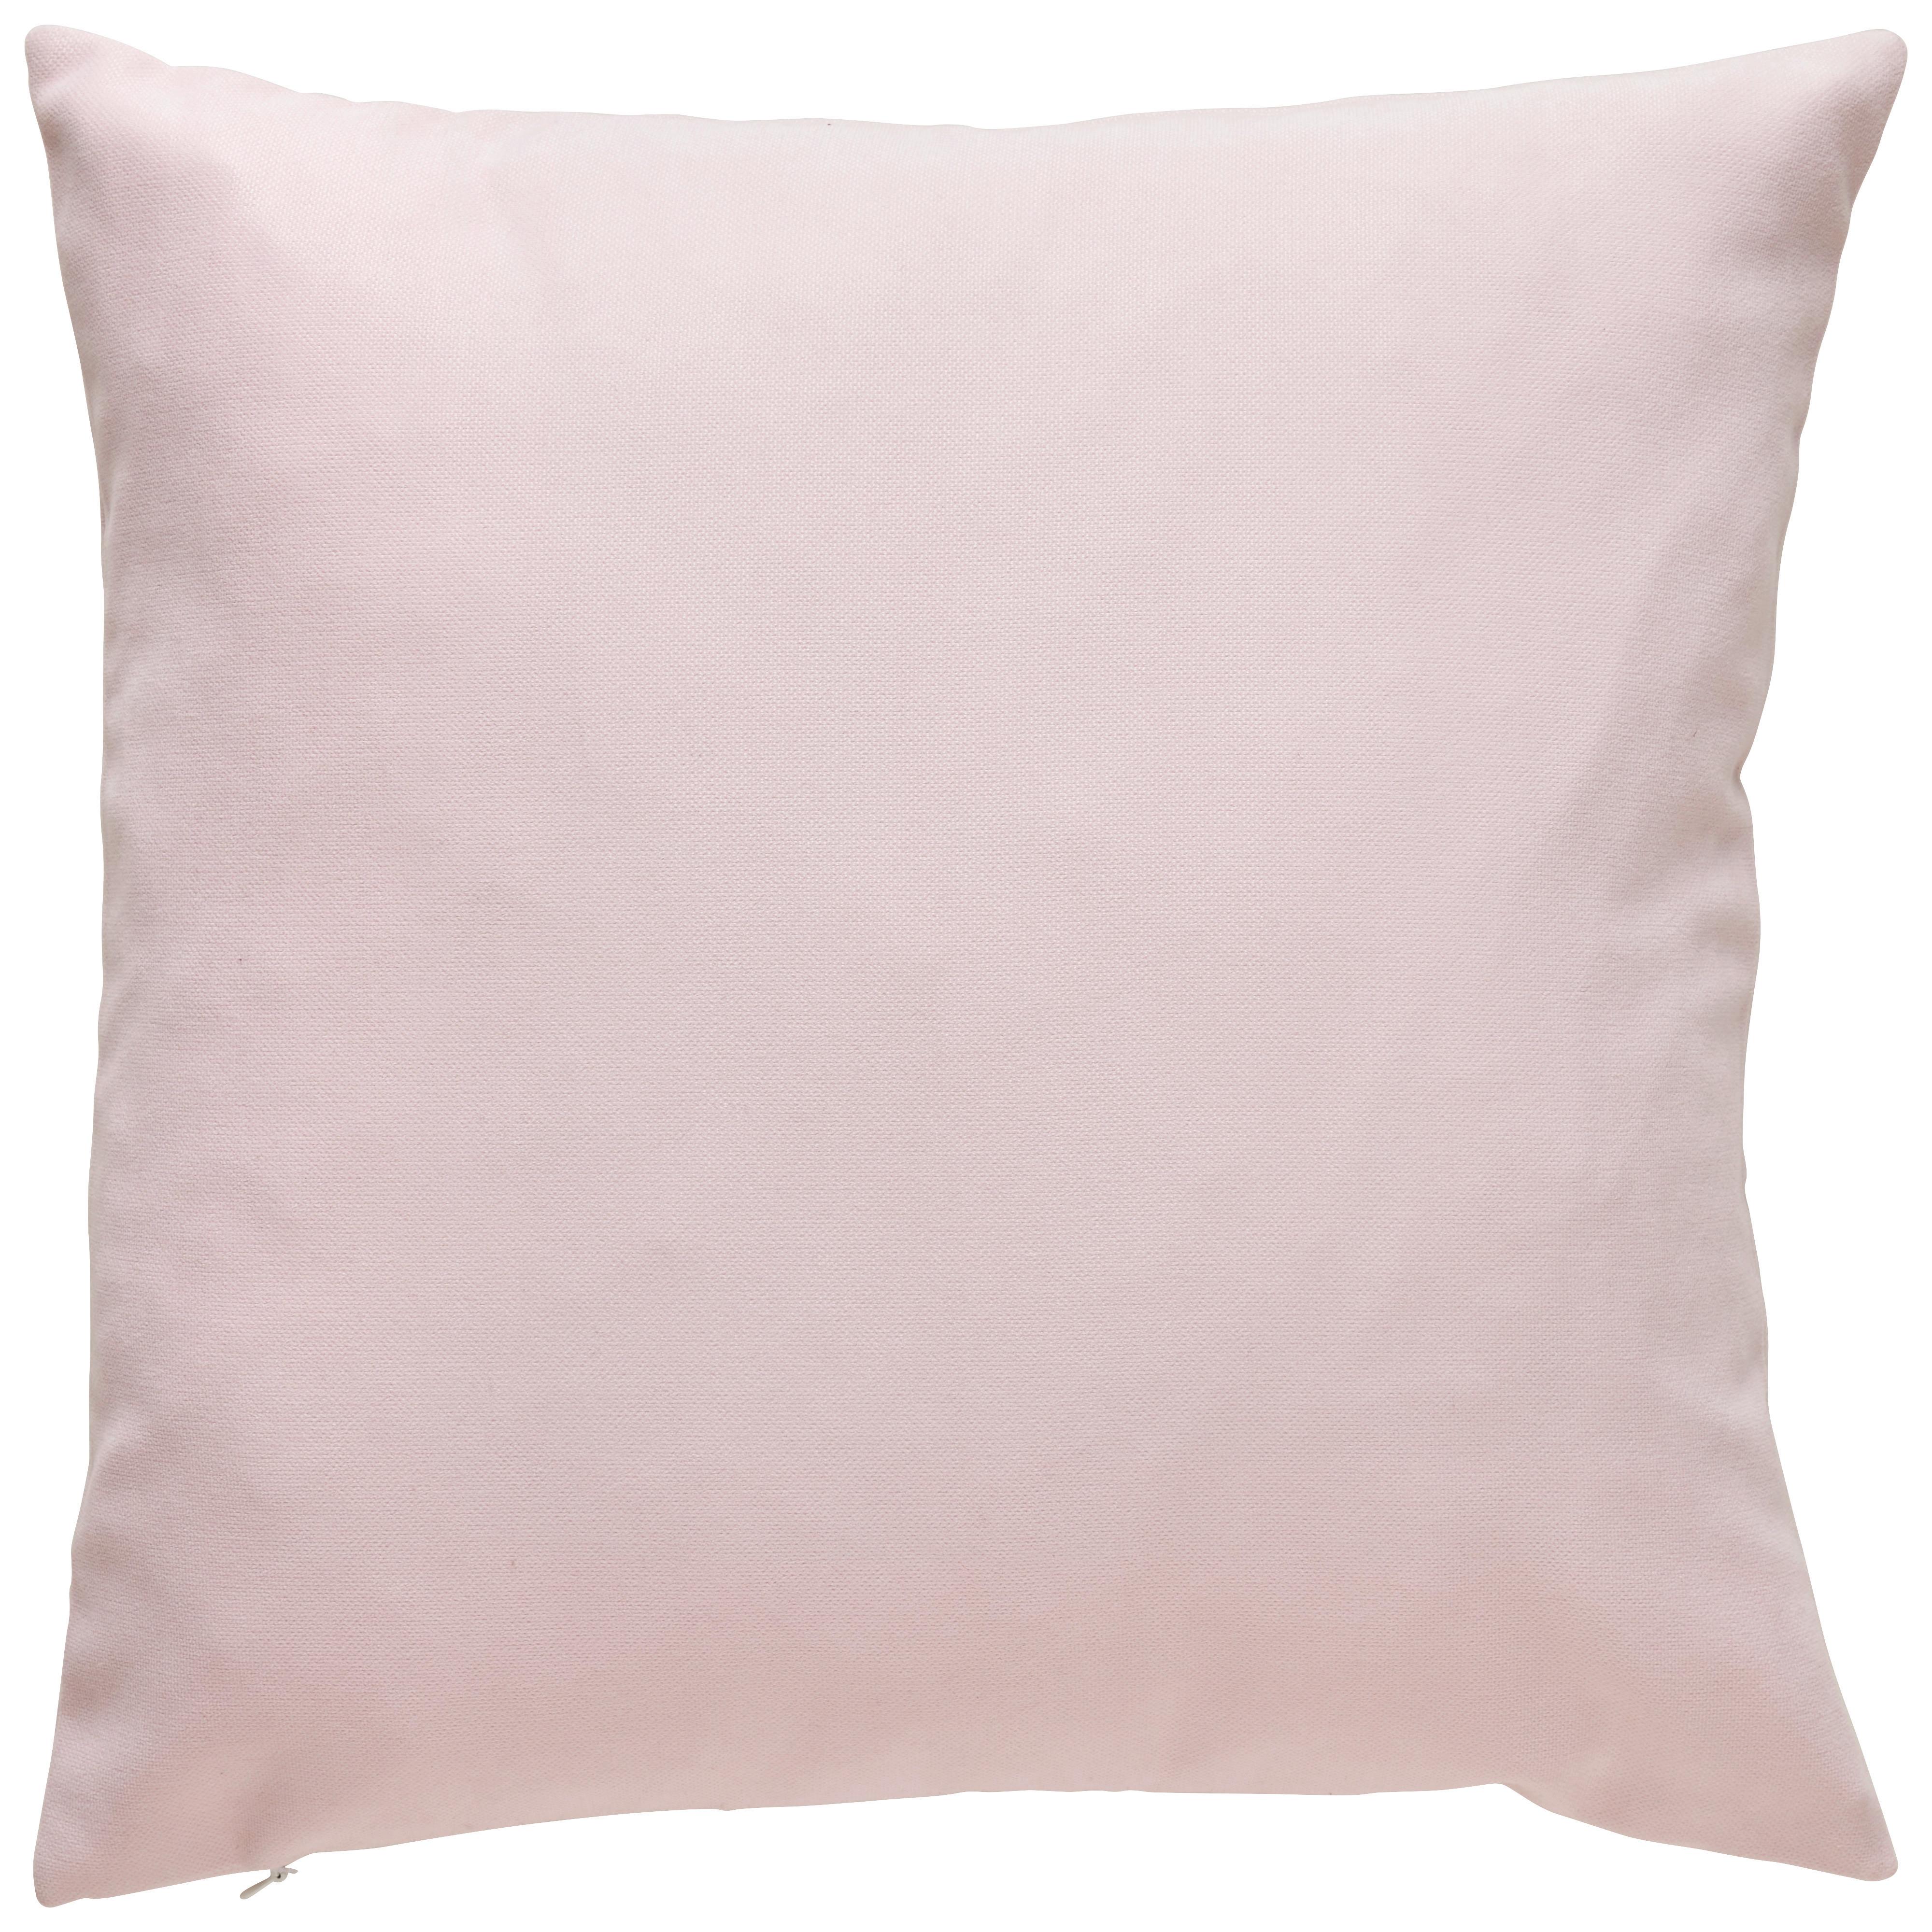 Dekorační Polštář Lexi, 45/45cm, Růžová - růžová, Moderní, textil (45/45cm) - Modern Living